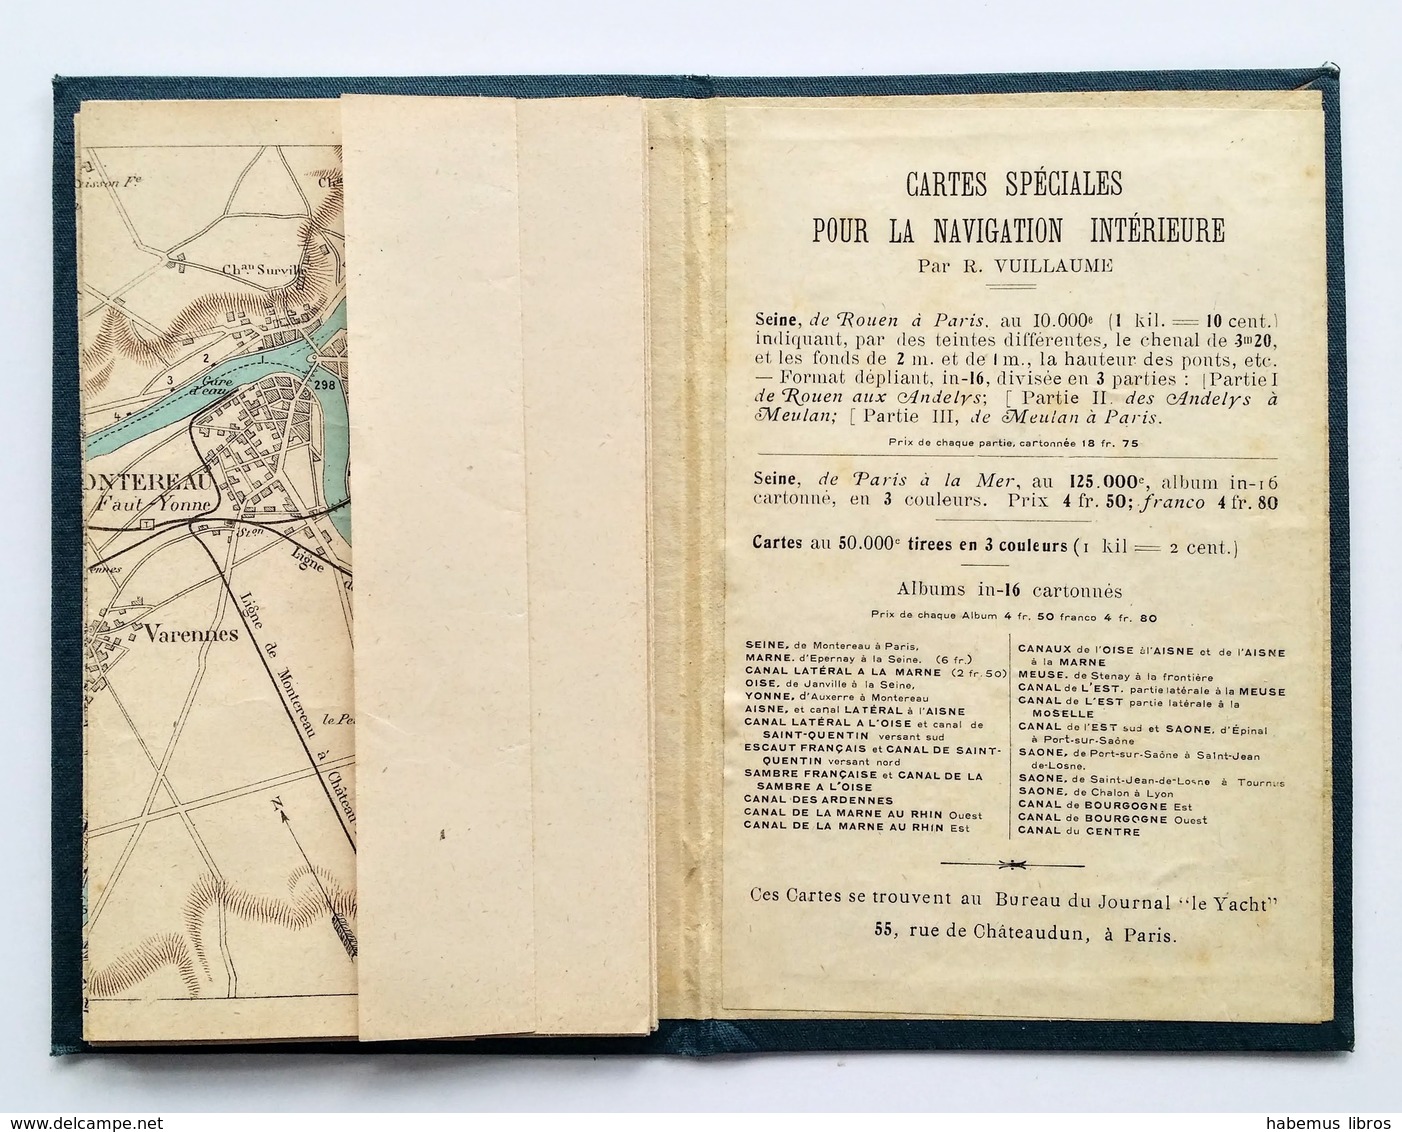 Carte De La Seine De Montereau à Paris Au 50 000e / Raoul Vuillaume. - 5e Tirage, 1924 - Kaarten & Atlas